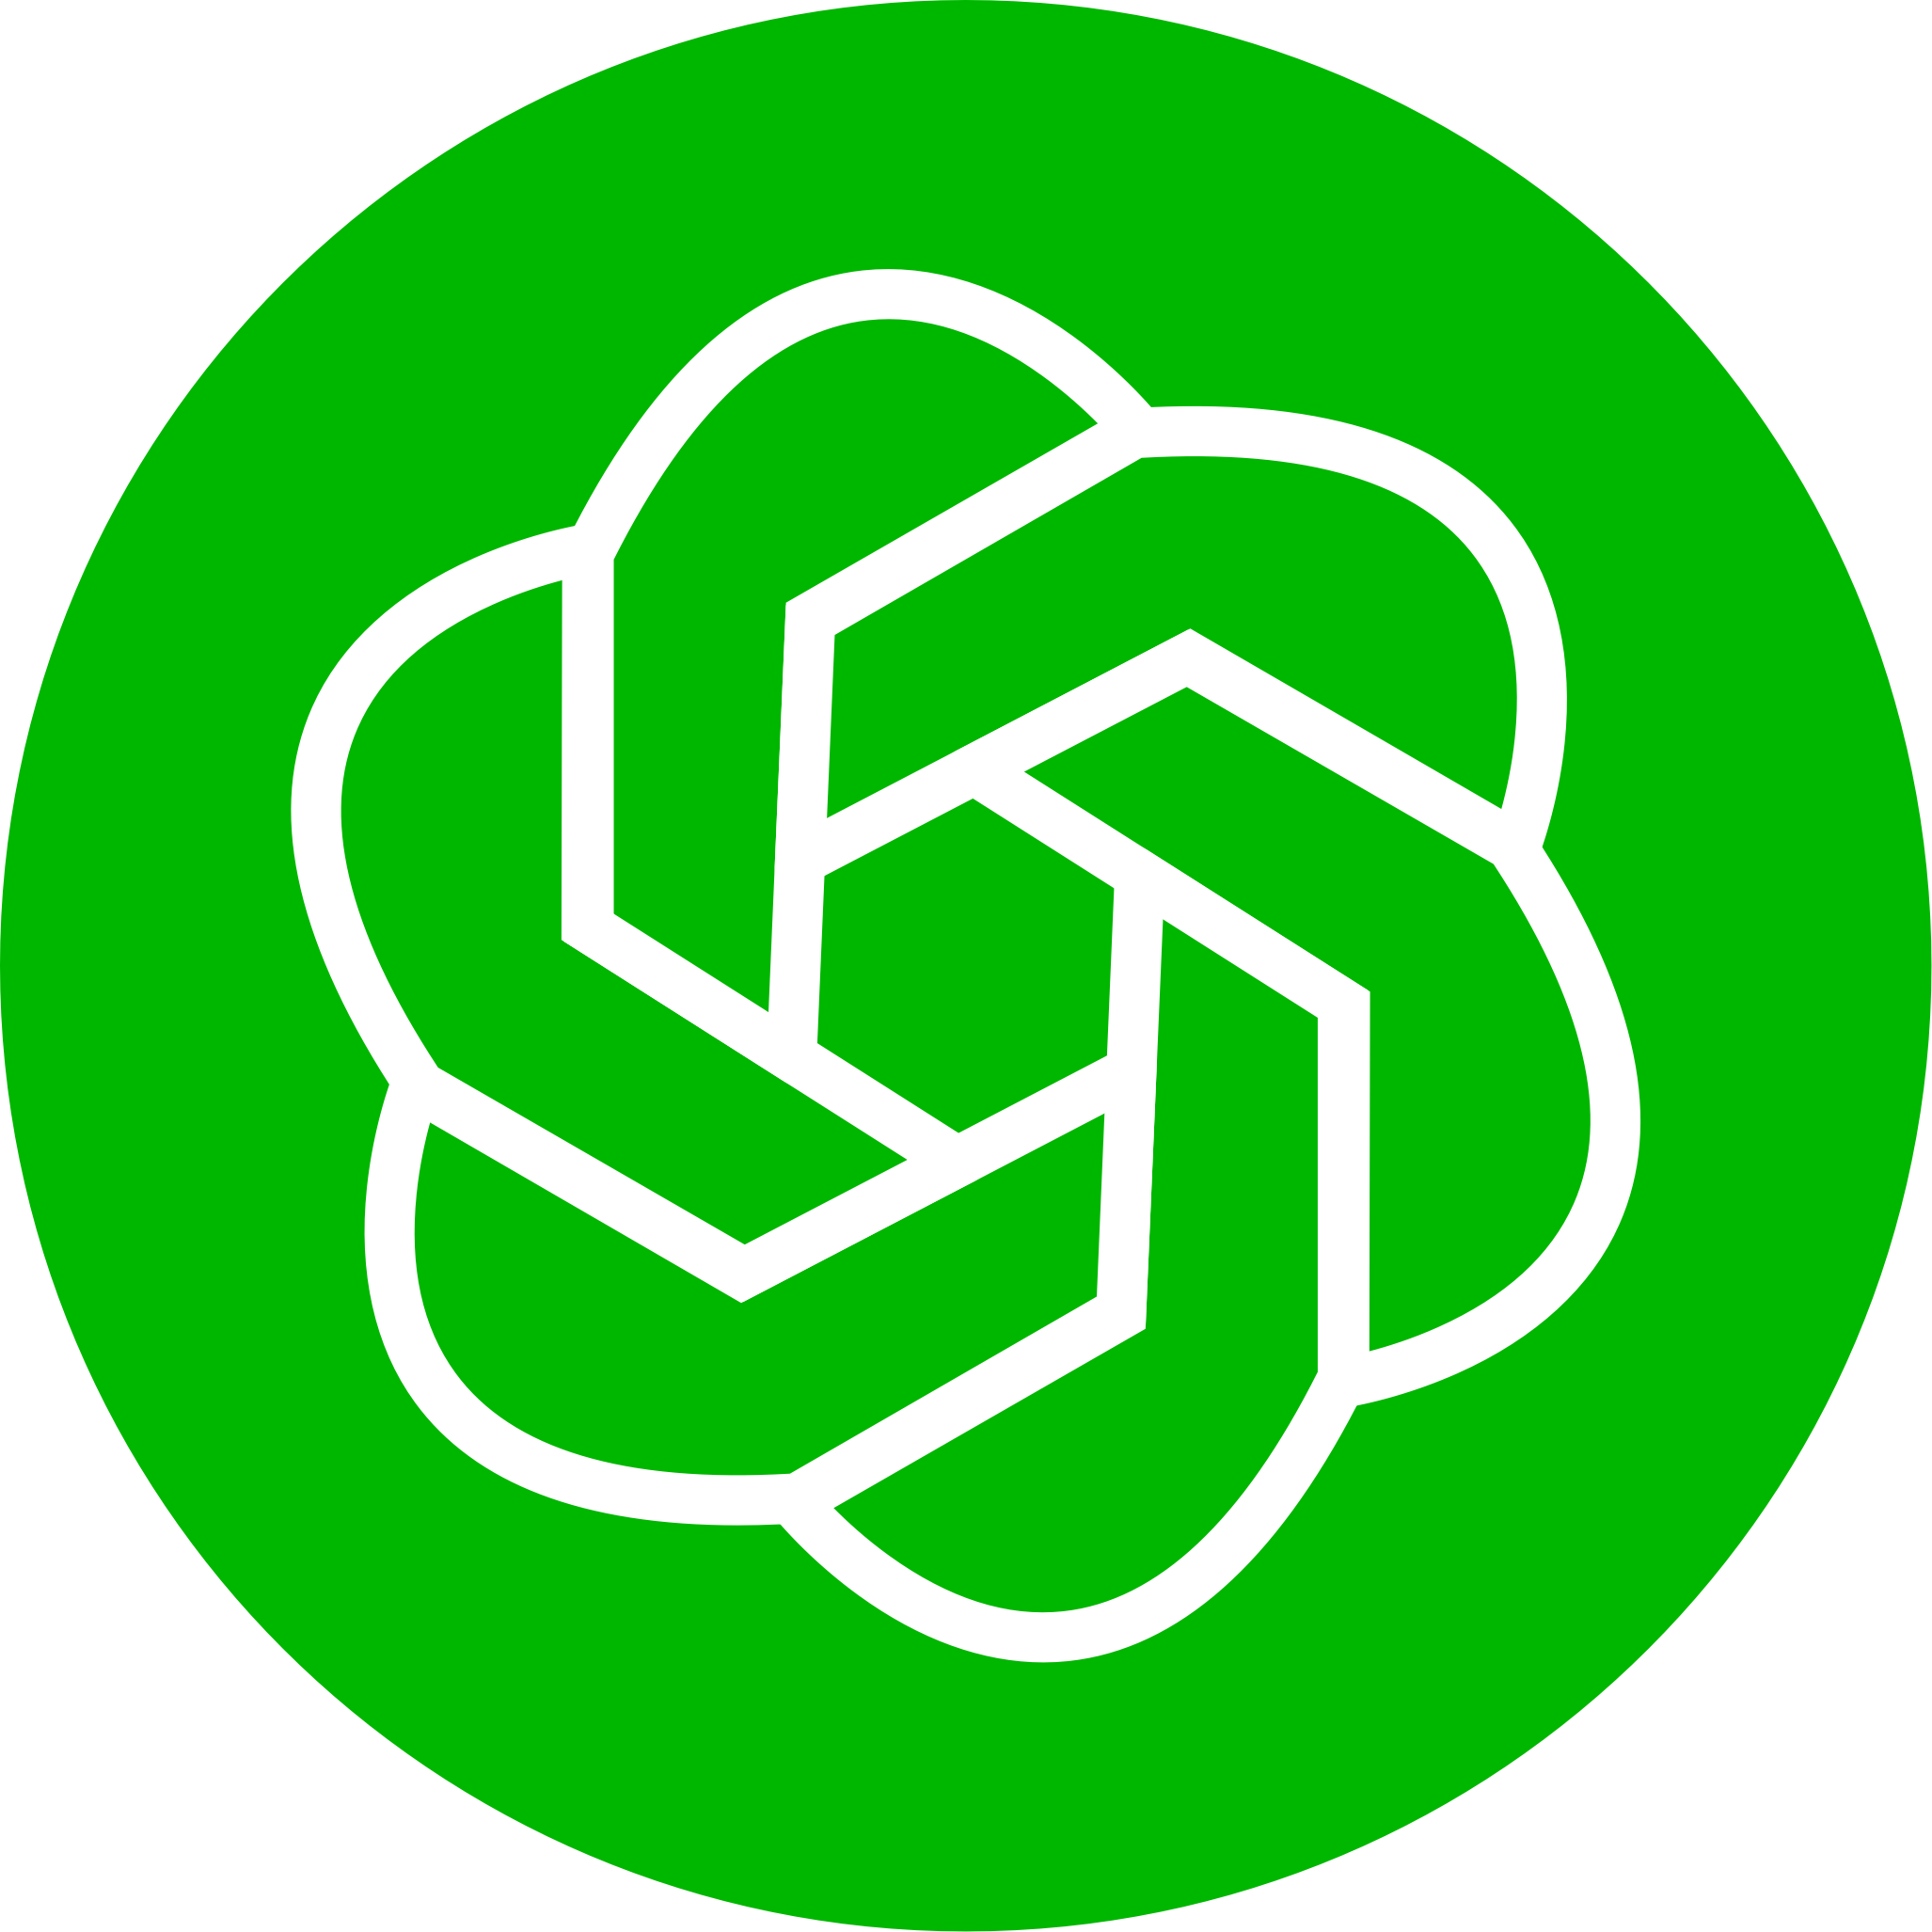 Circle Green logo ChatGPT png visual studio marketplace 42628